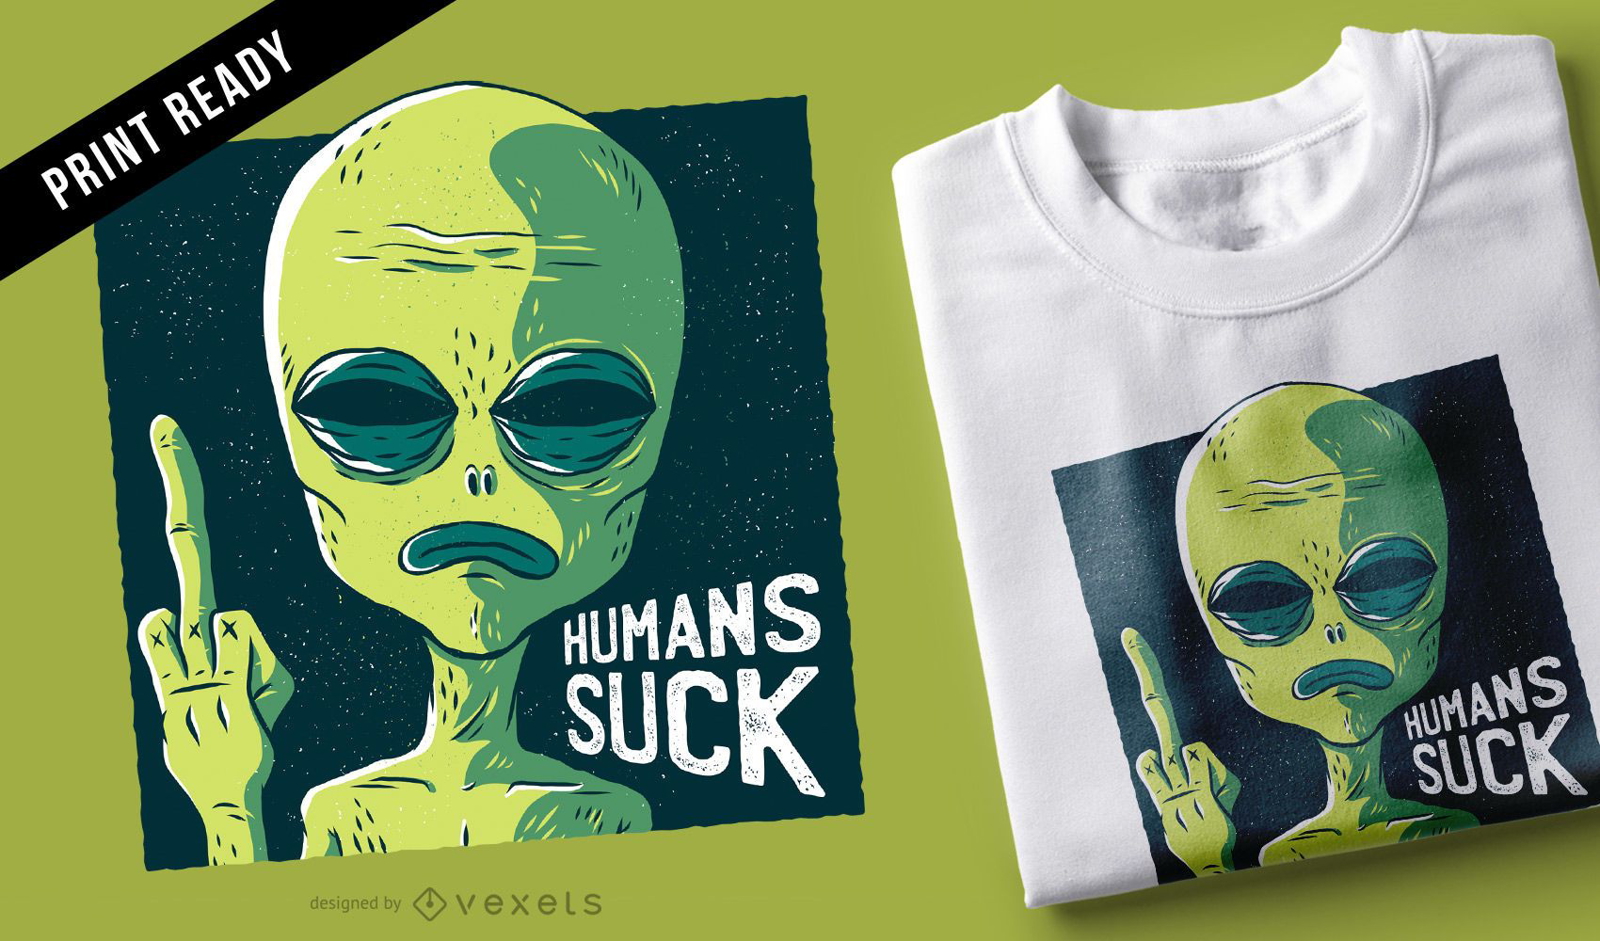 Los humanos chupan el diseño de la camiseta.